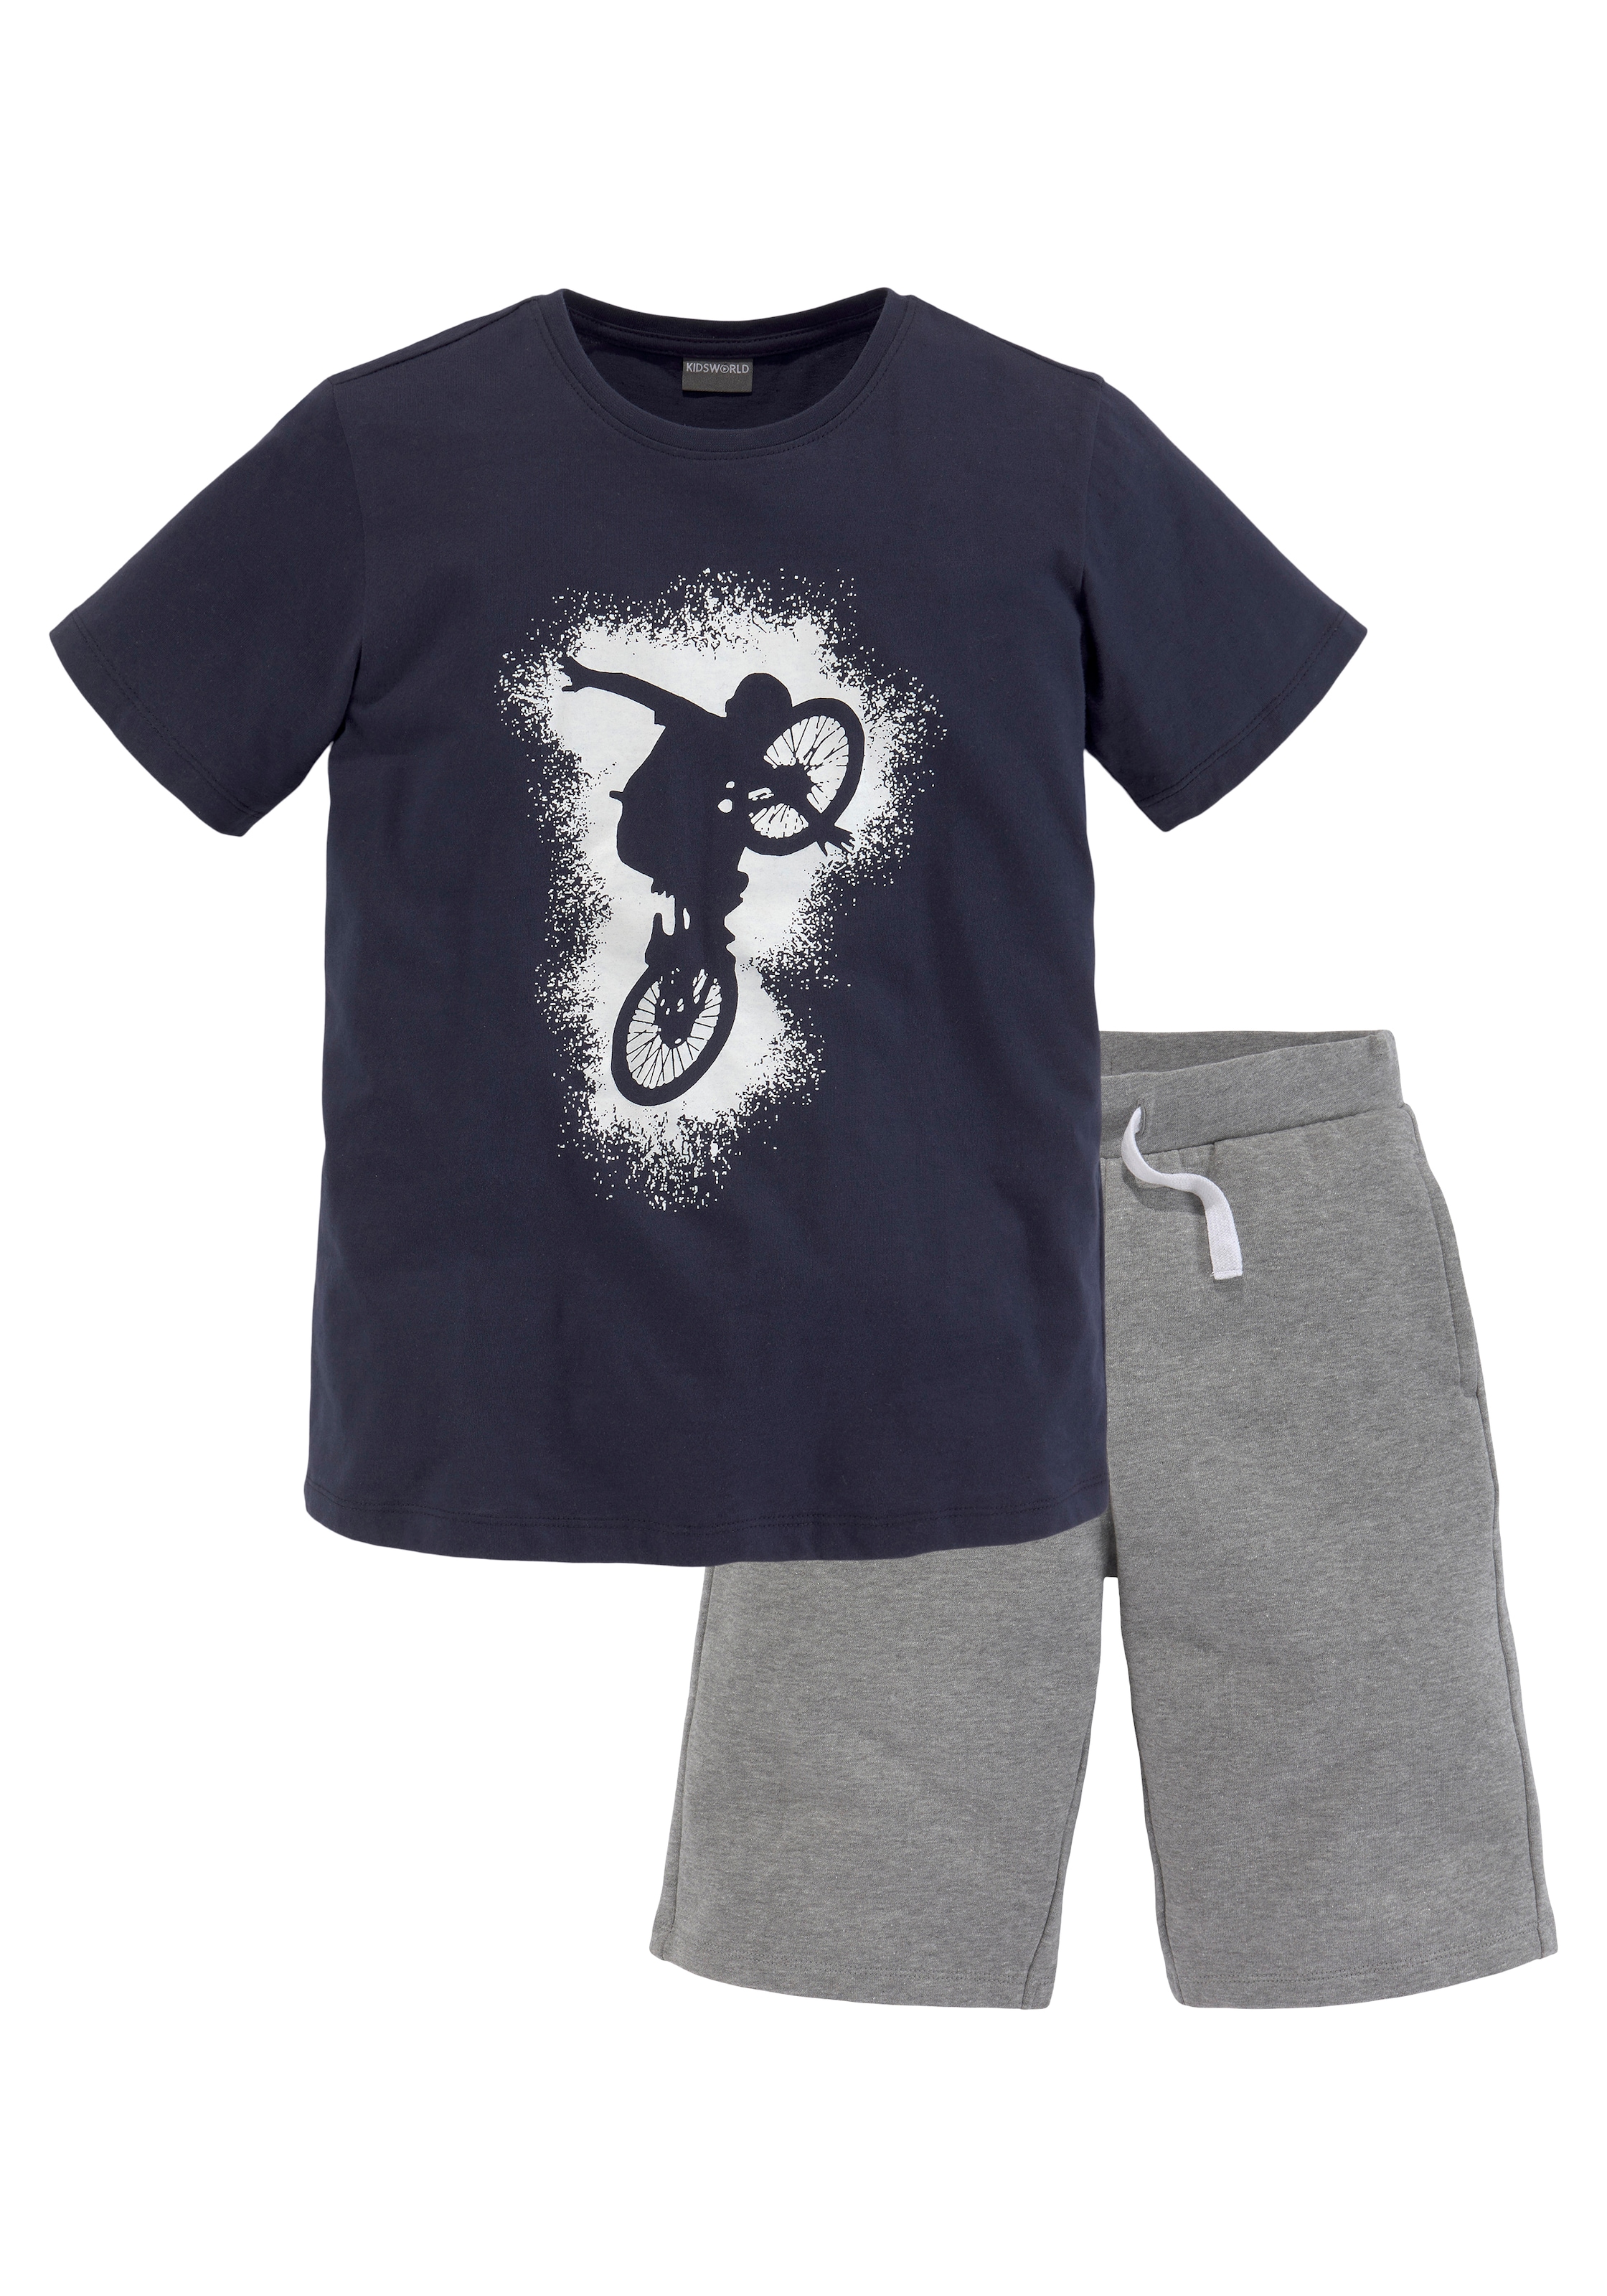 KIDSWORLD T-Shirt & Sweatbermudas, (Set, 2 tlg.), im kaufen Online-Shop BIKER